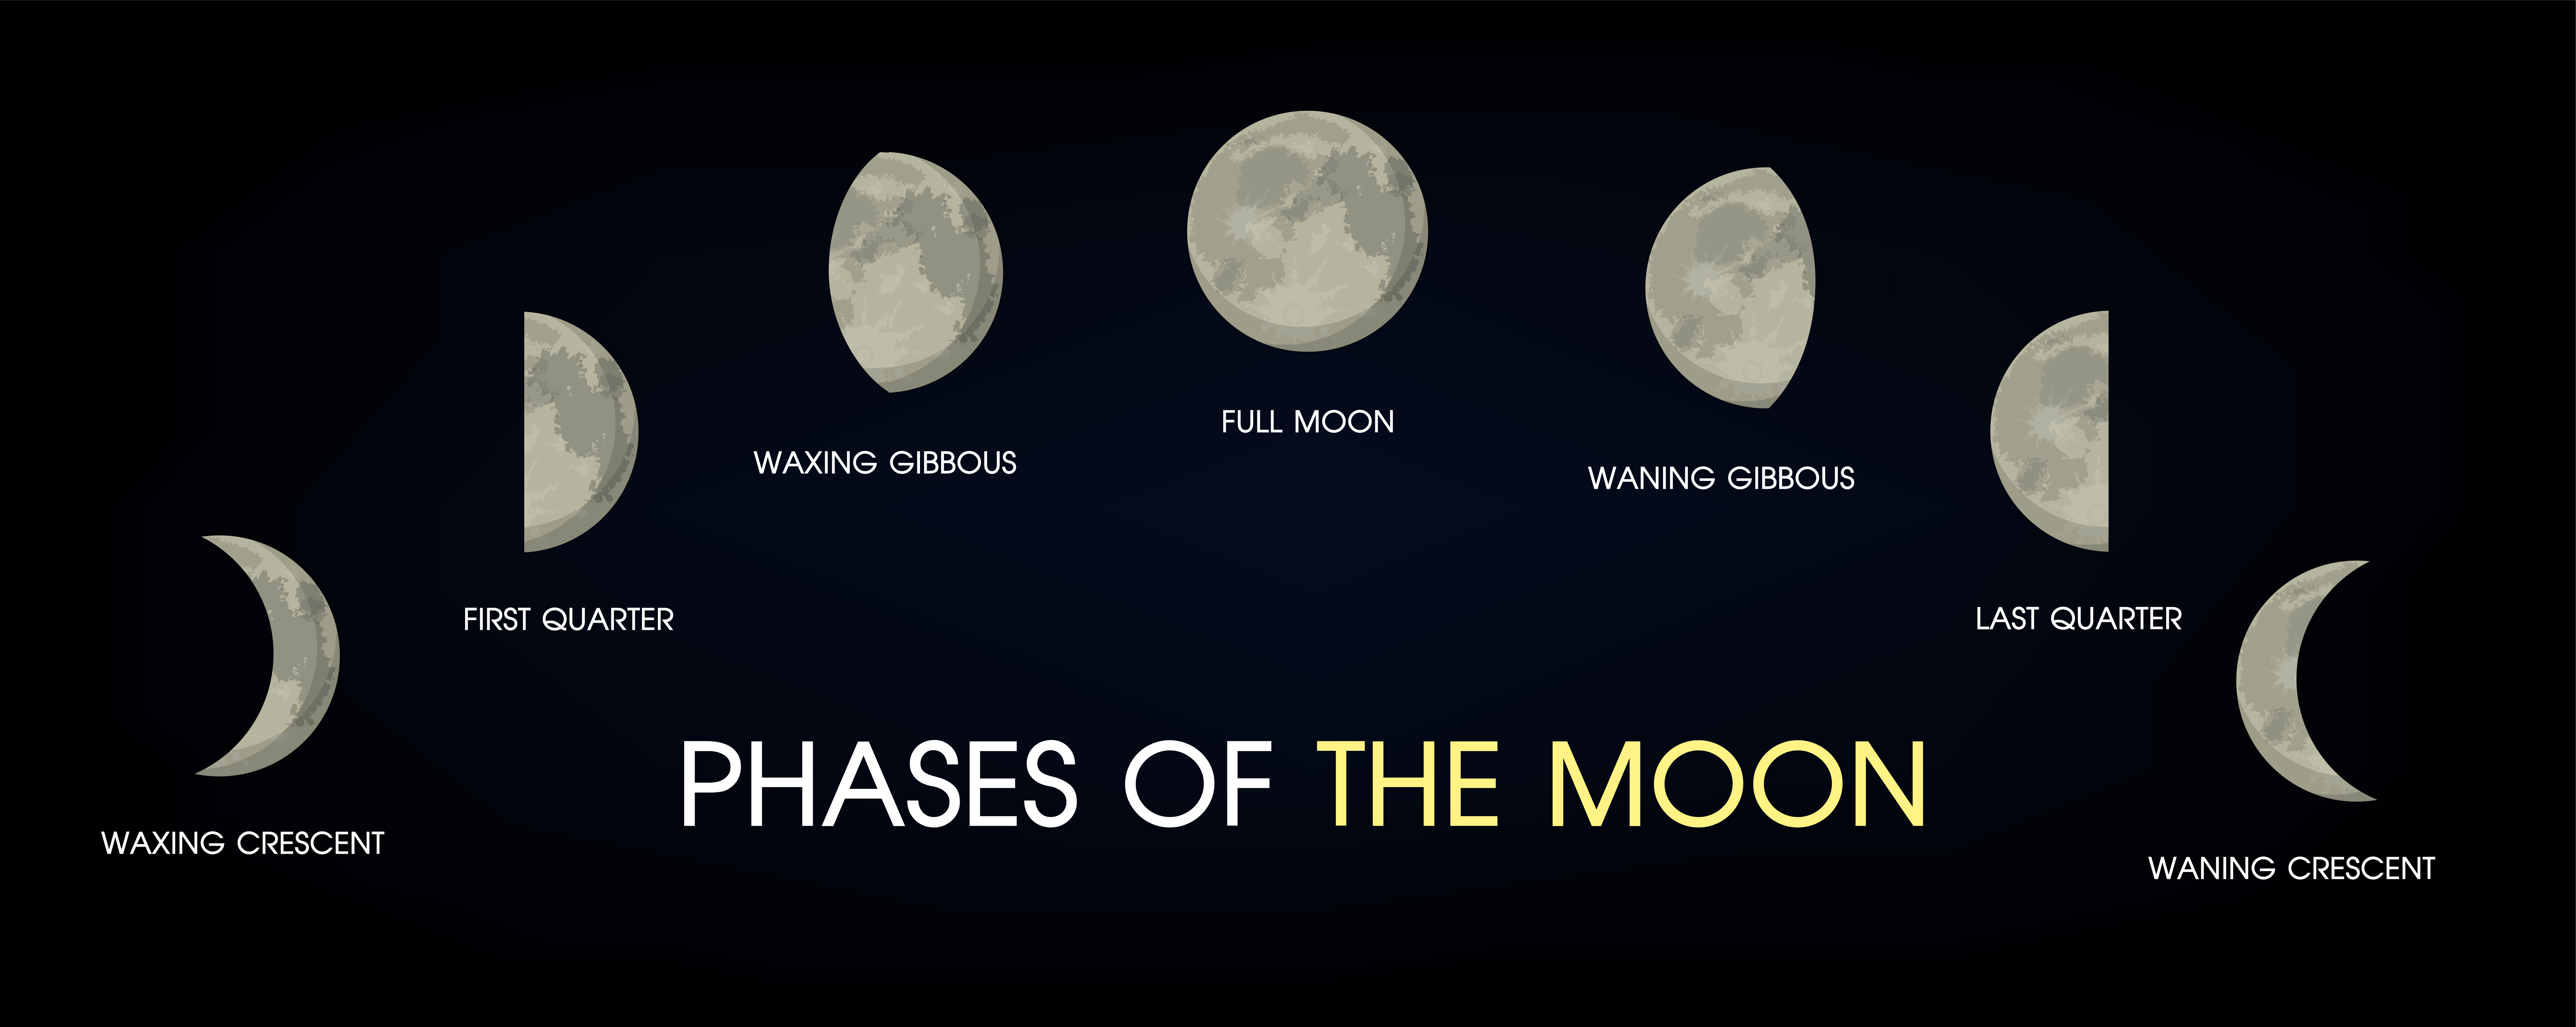 Фаза Луны на английском в картинках